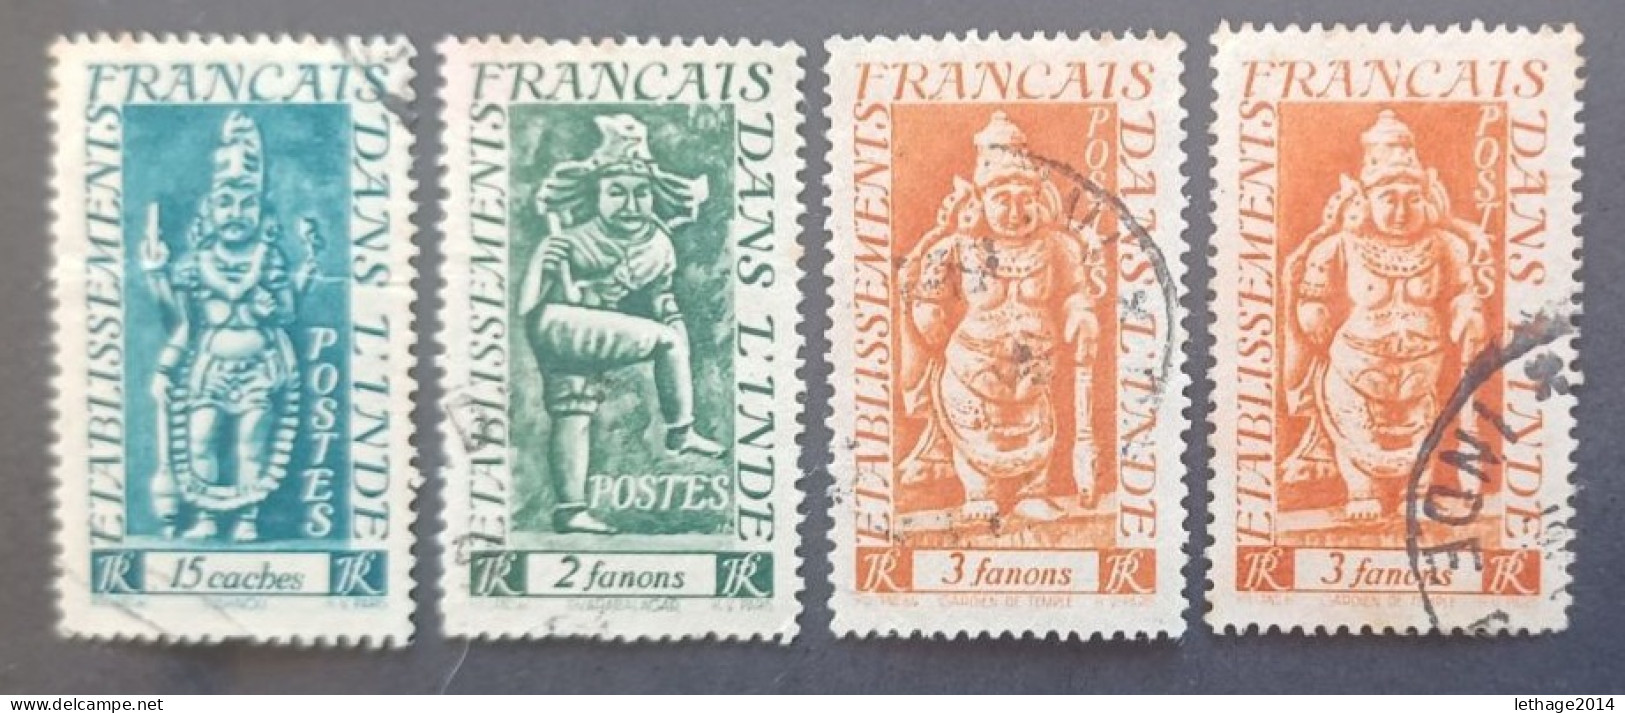 COLONIE FRANCE FRANCIA INDE 1948 DIVINITES CAT YVERT N 243-246-249 - Used Stamps